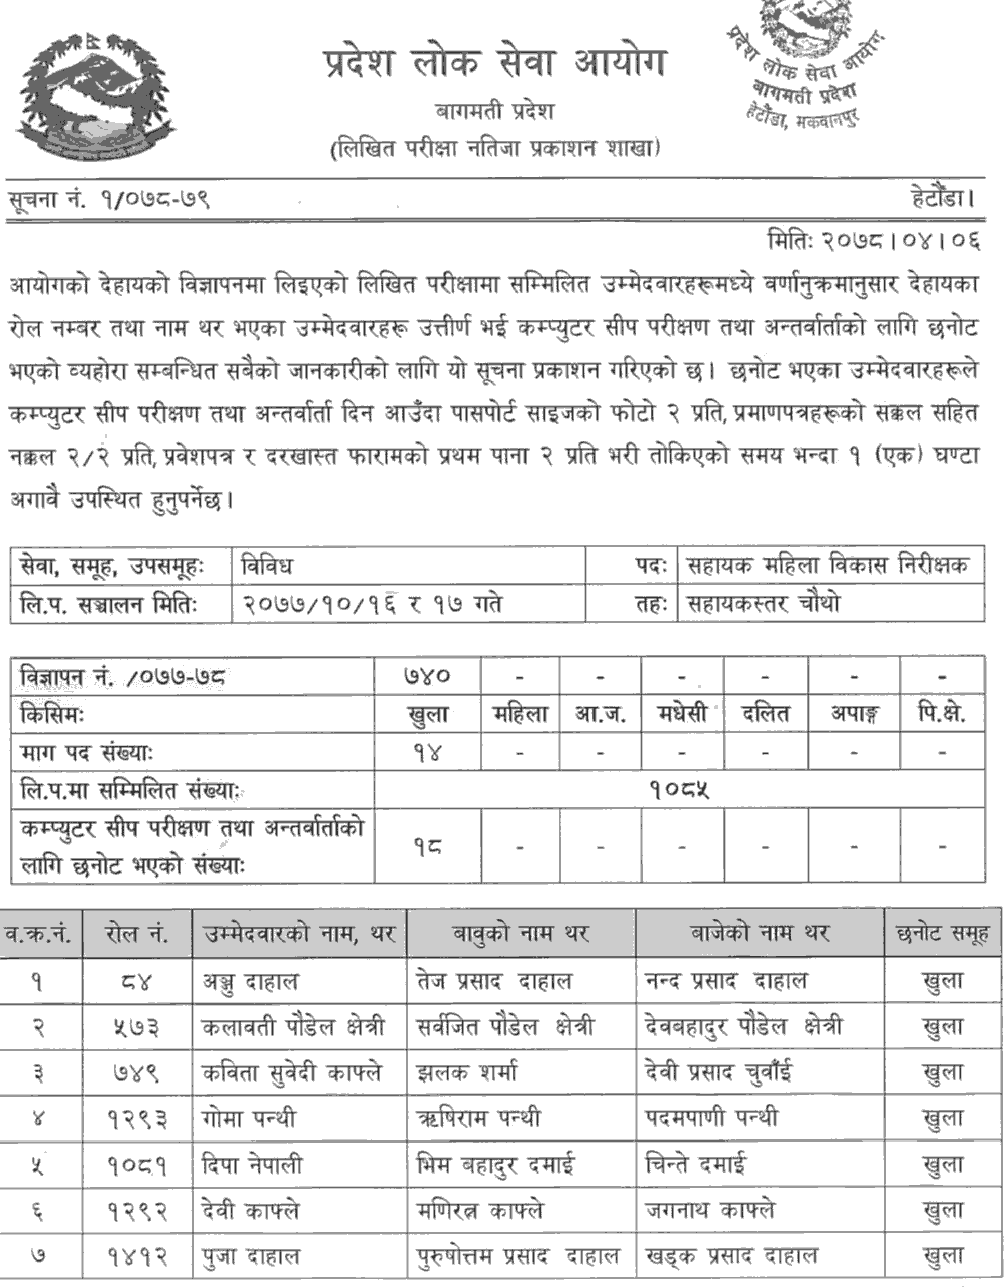 Bagmati Pradesh Lok Sewa Aayog Written Exam Result of 4th Level Sahaya Mahila Bikas Nirikshak